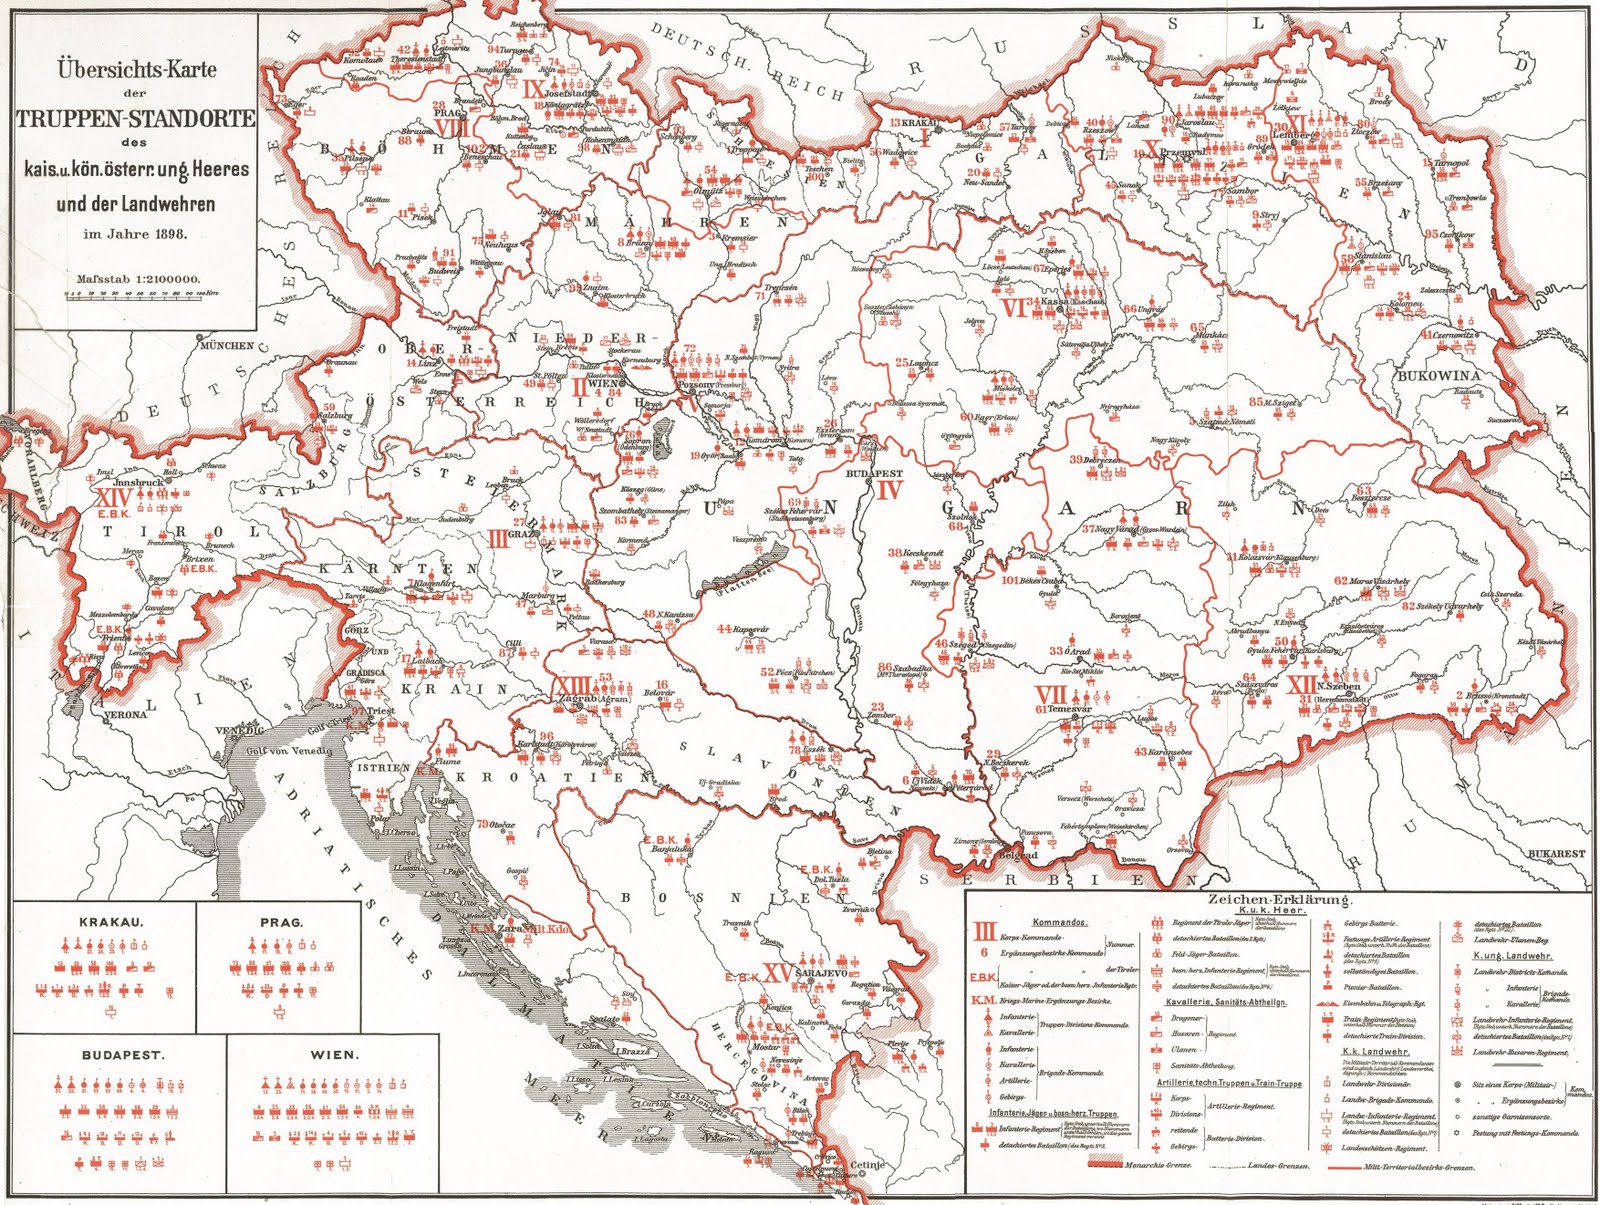 Prehľadná mapa vojenských veliteľstiev Rakúsko-Uhorska z roku 1898 (0,5 M<img class='smiley' style='width:20px;height:20px;' src='images/smiley/cool.svg' alt='Cool'>